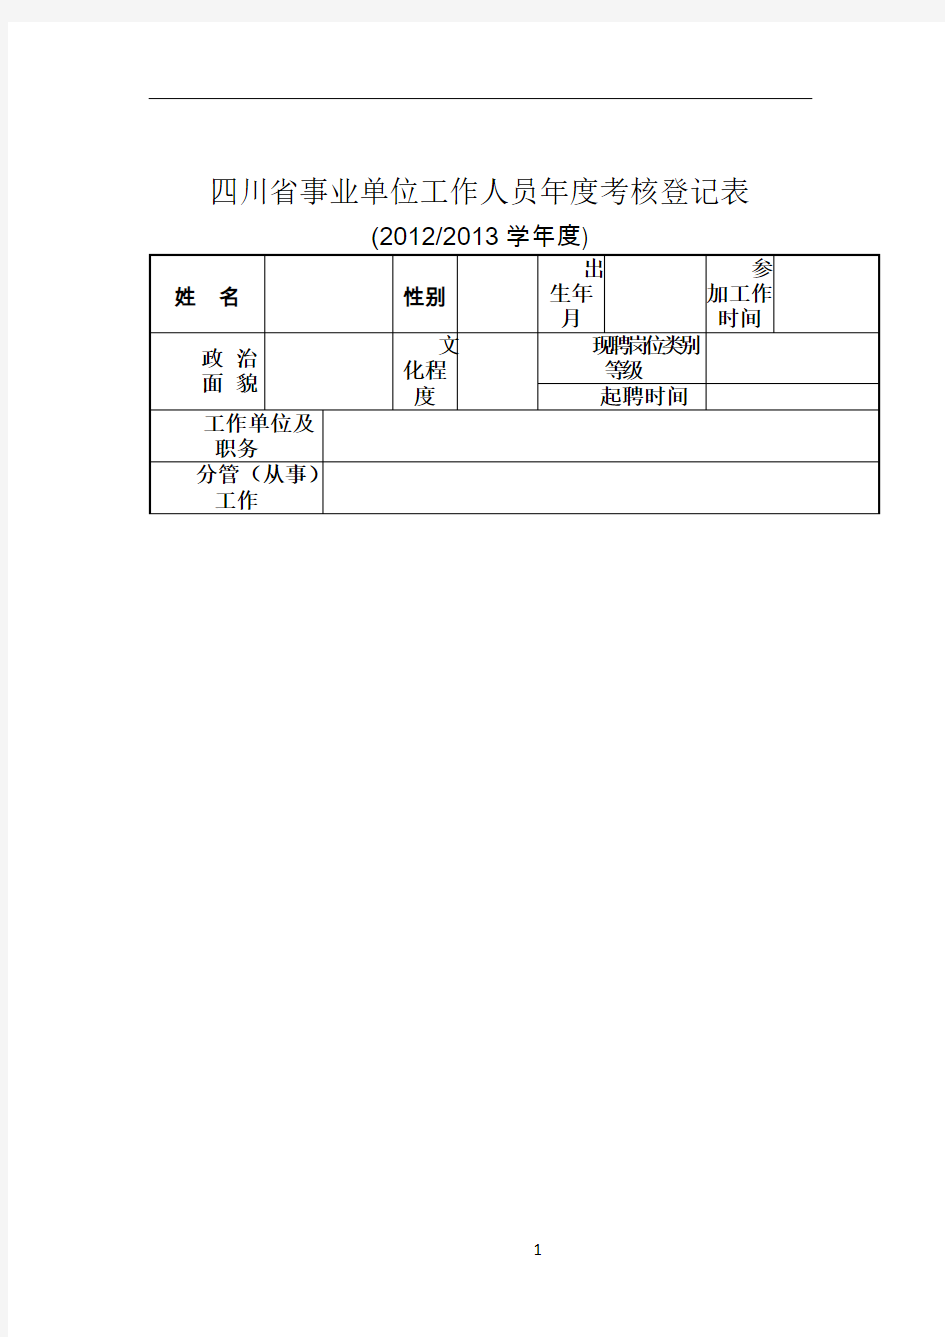 四川省事业单位工作人员年度考核表